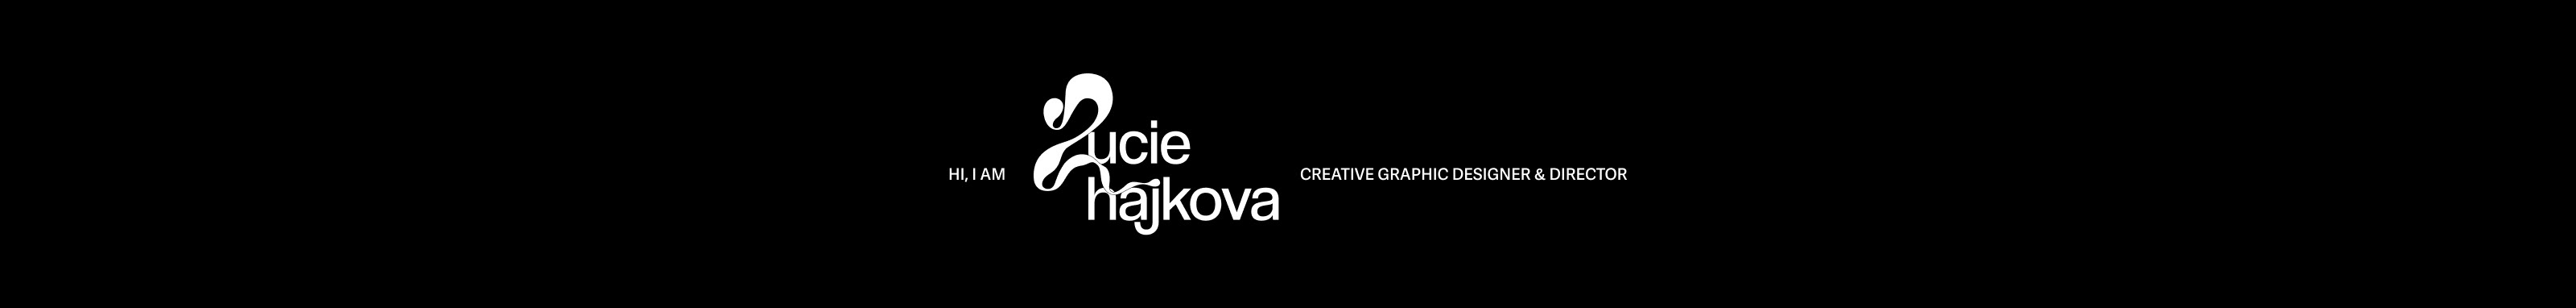 Profil-Banner von Lucie Hajková